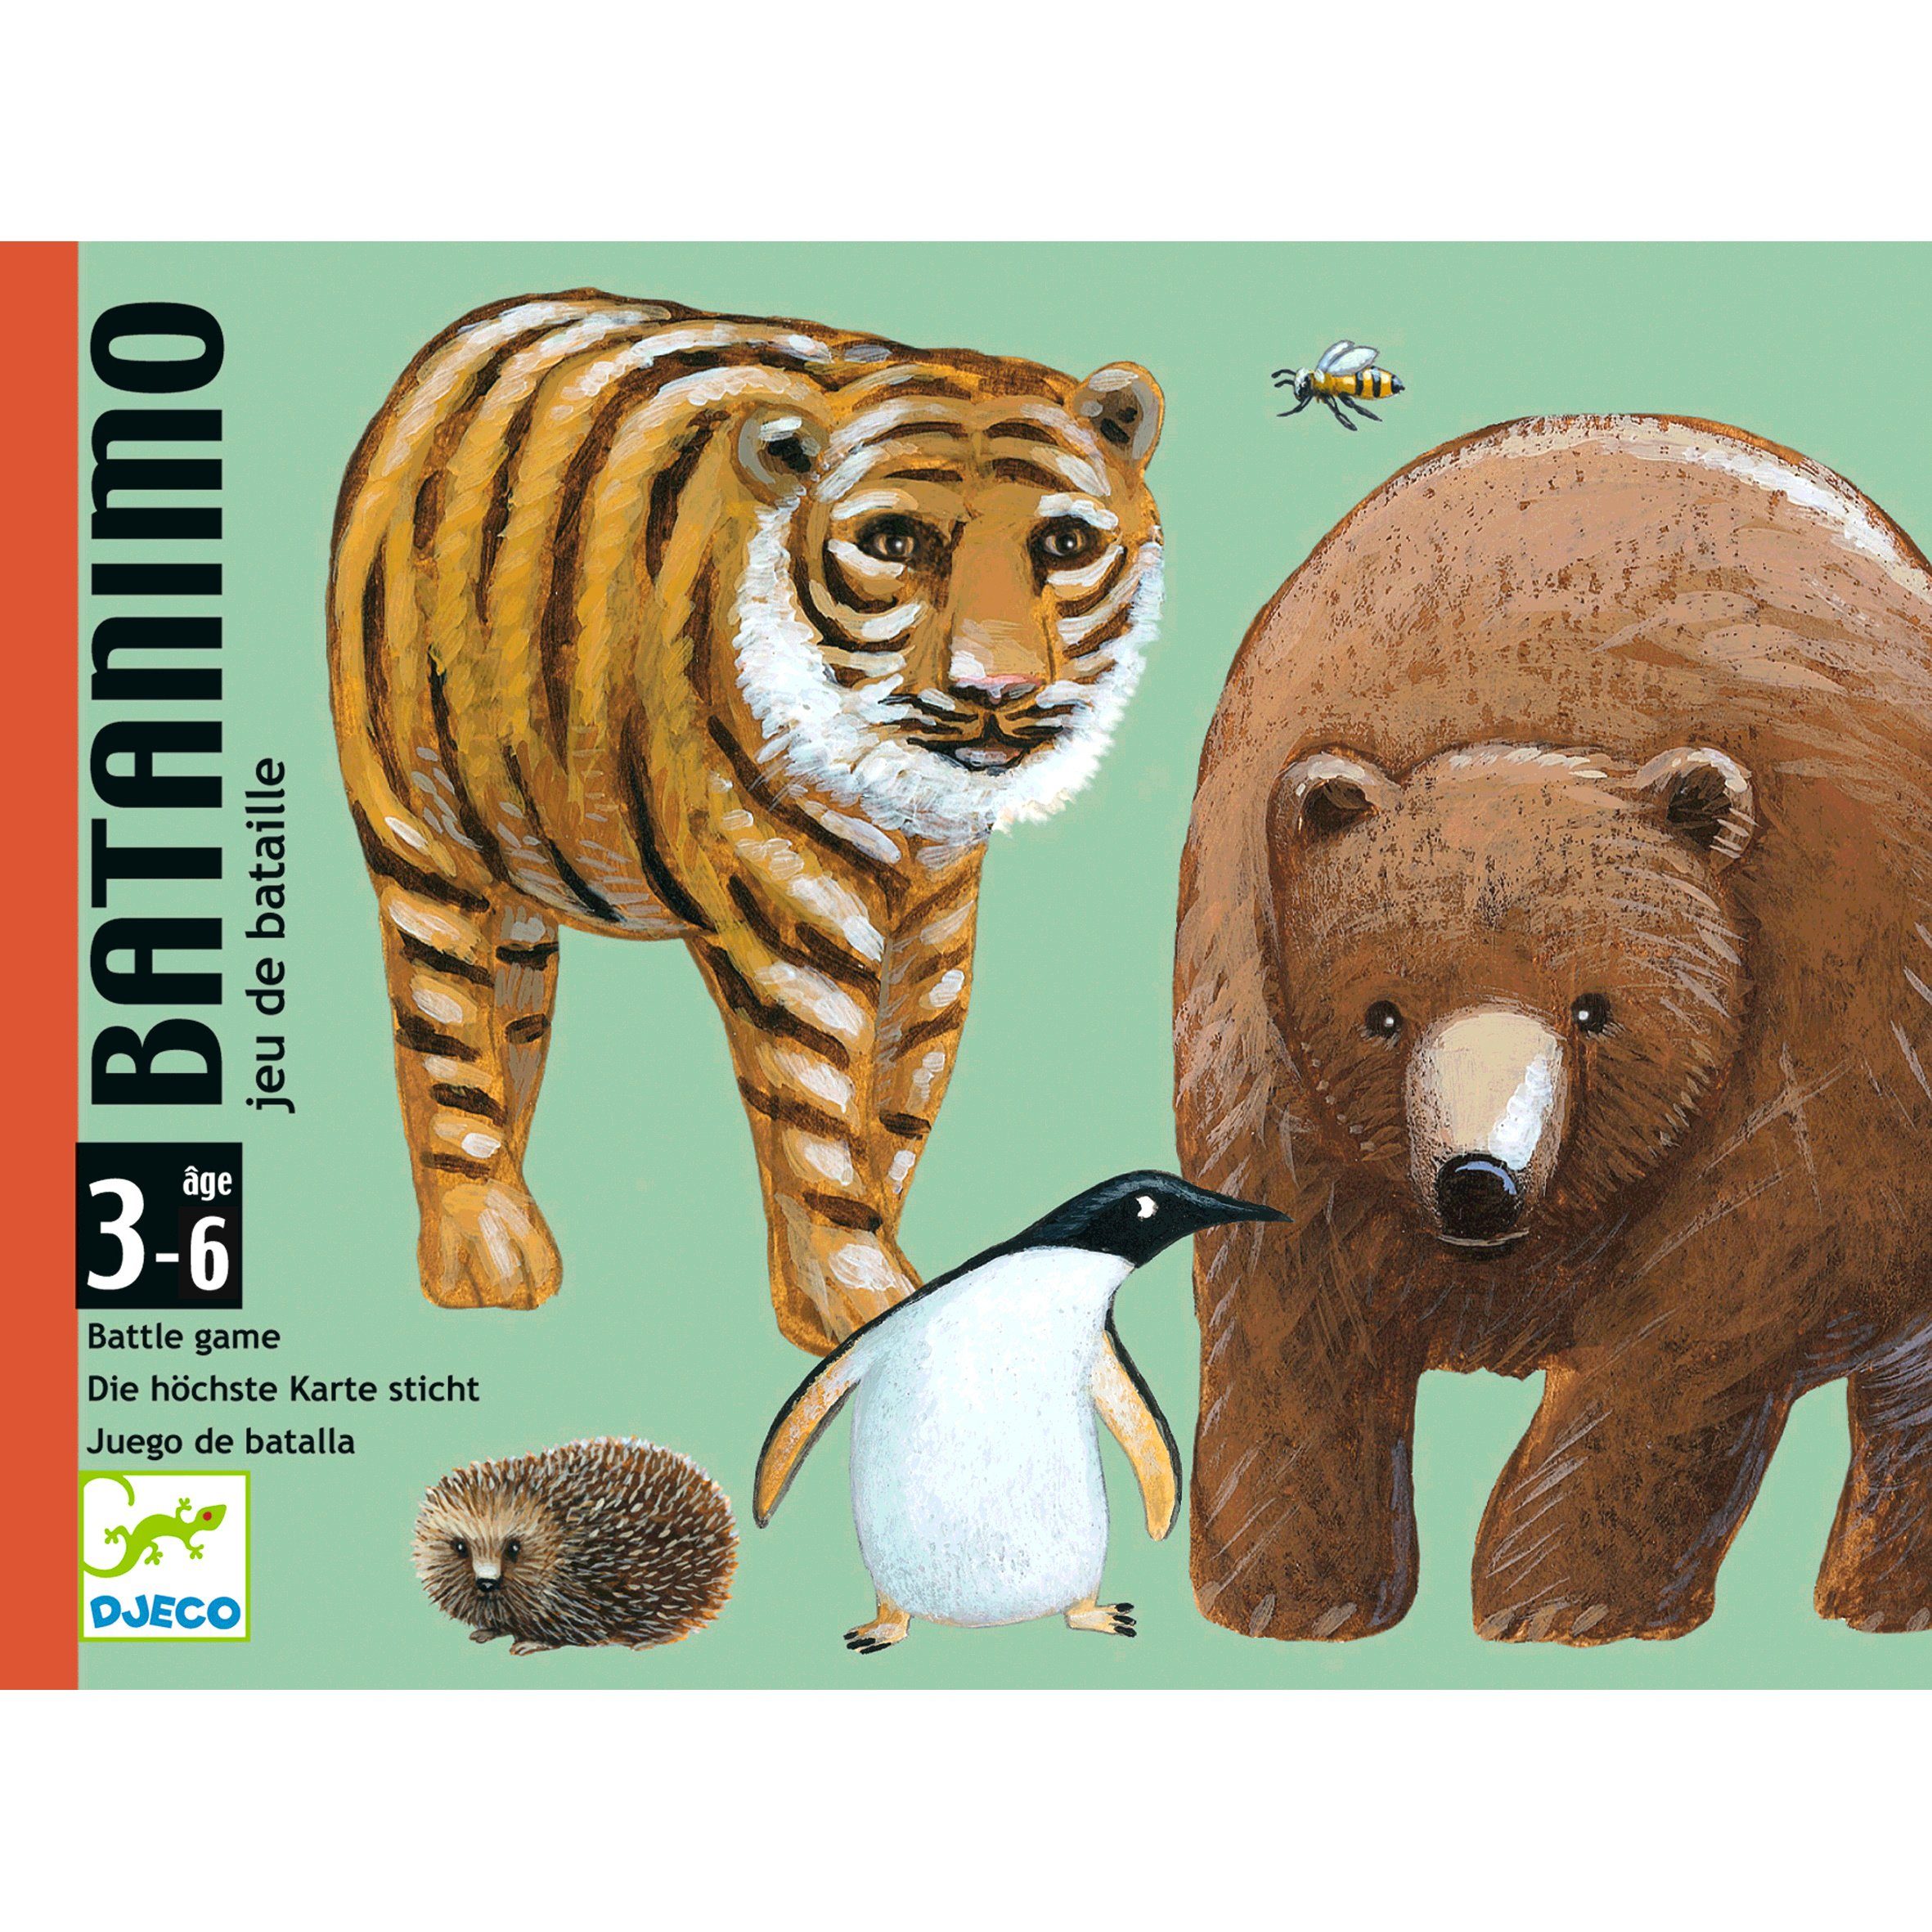 Kartenspiel DJECO Spiel, Batanimo mit Tier-Illustrationen Stichspiel verschiedenen